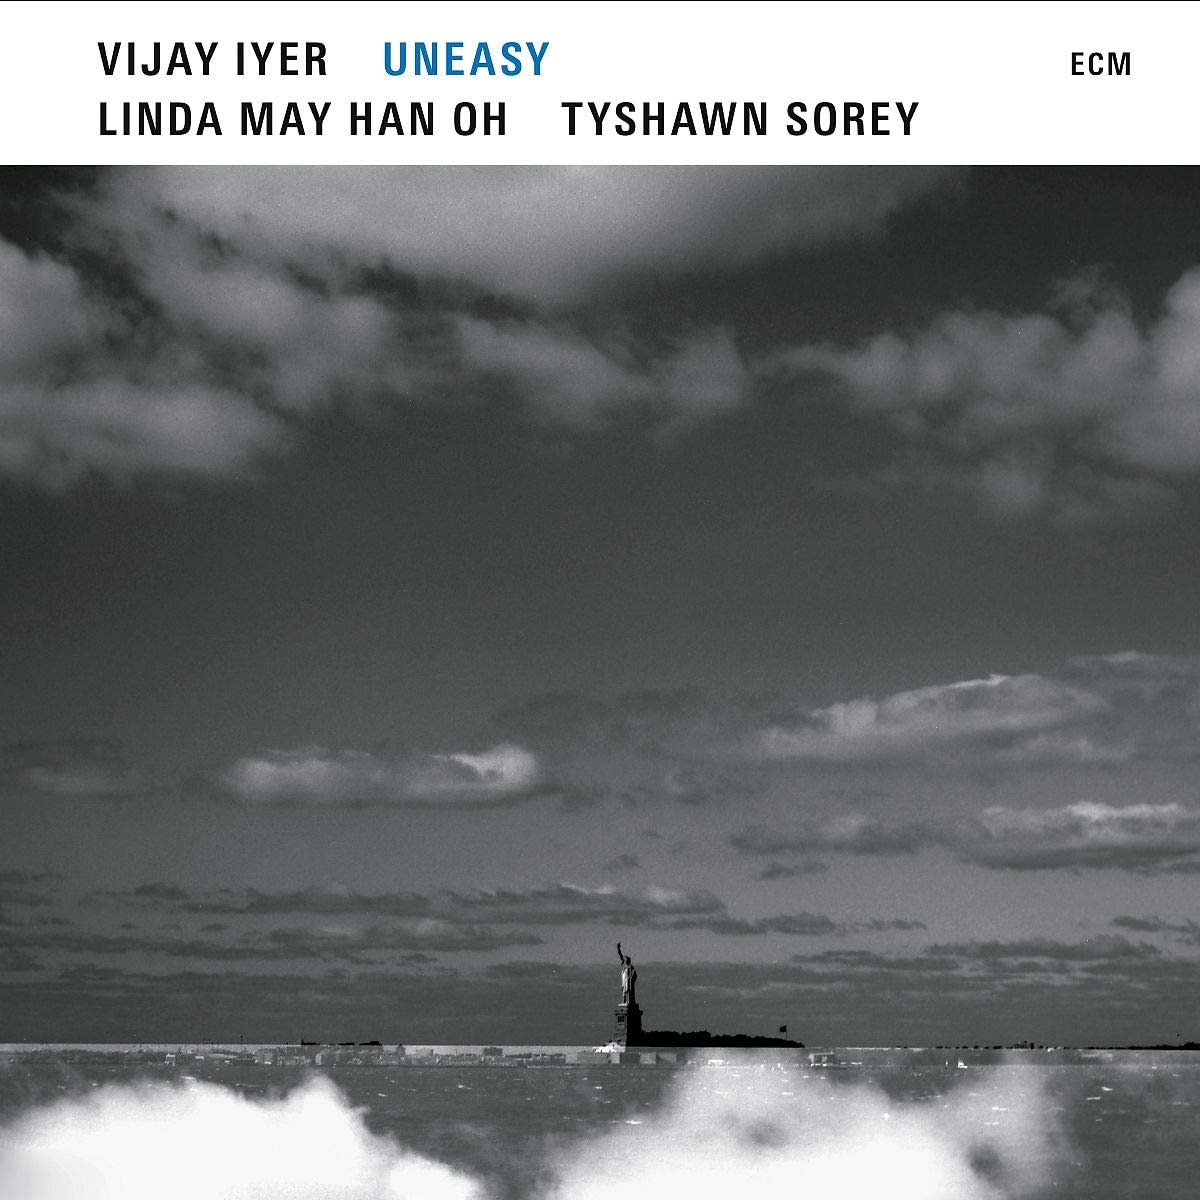 15. Vijay Iyer, Uneasy, ECM